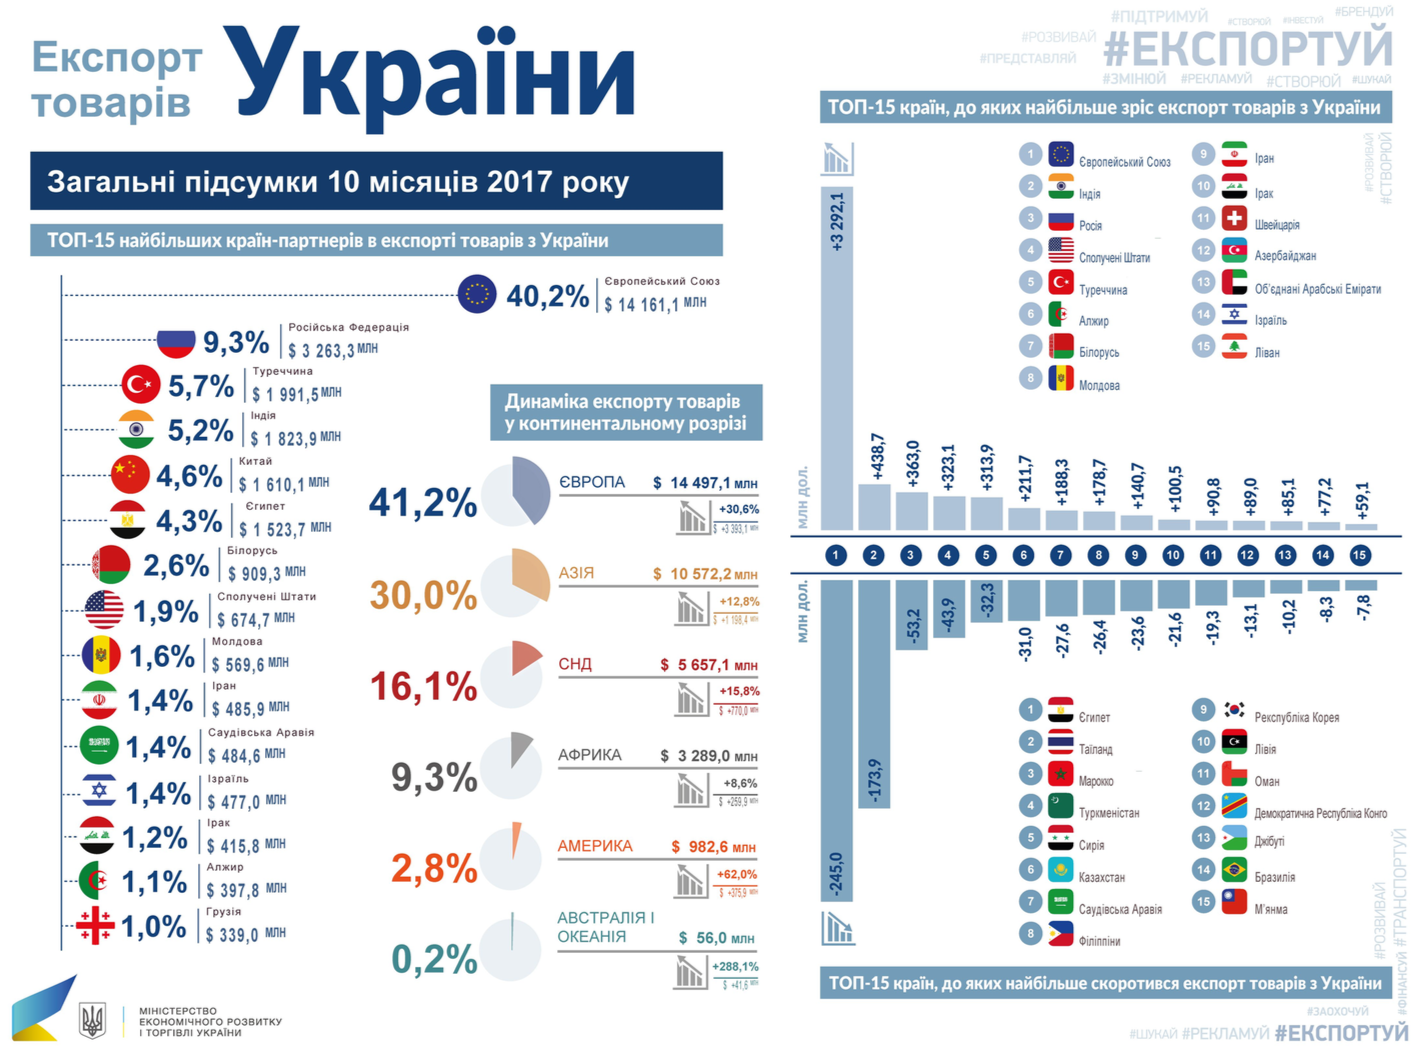 Eksport ukraїnśkyh tovariv zris na 20,9% i vstanovyv novyj rekord